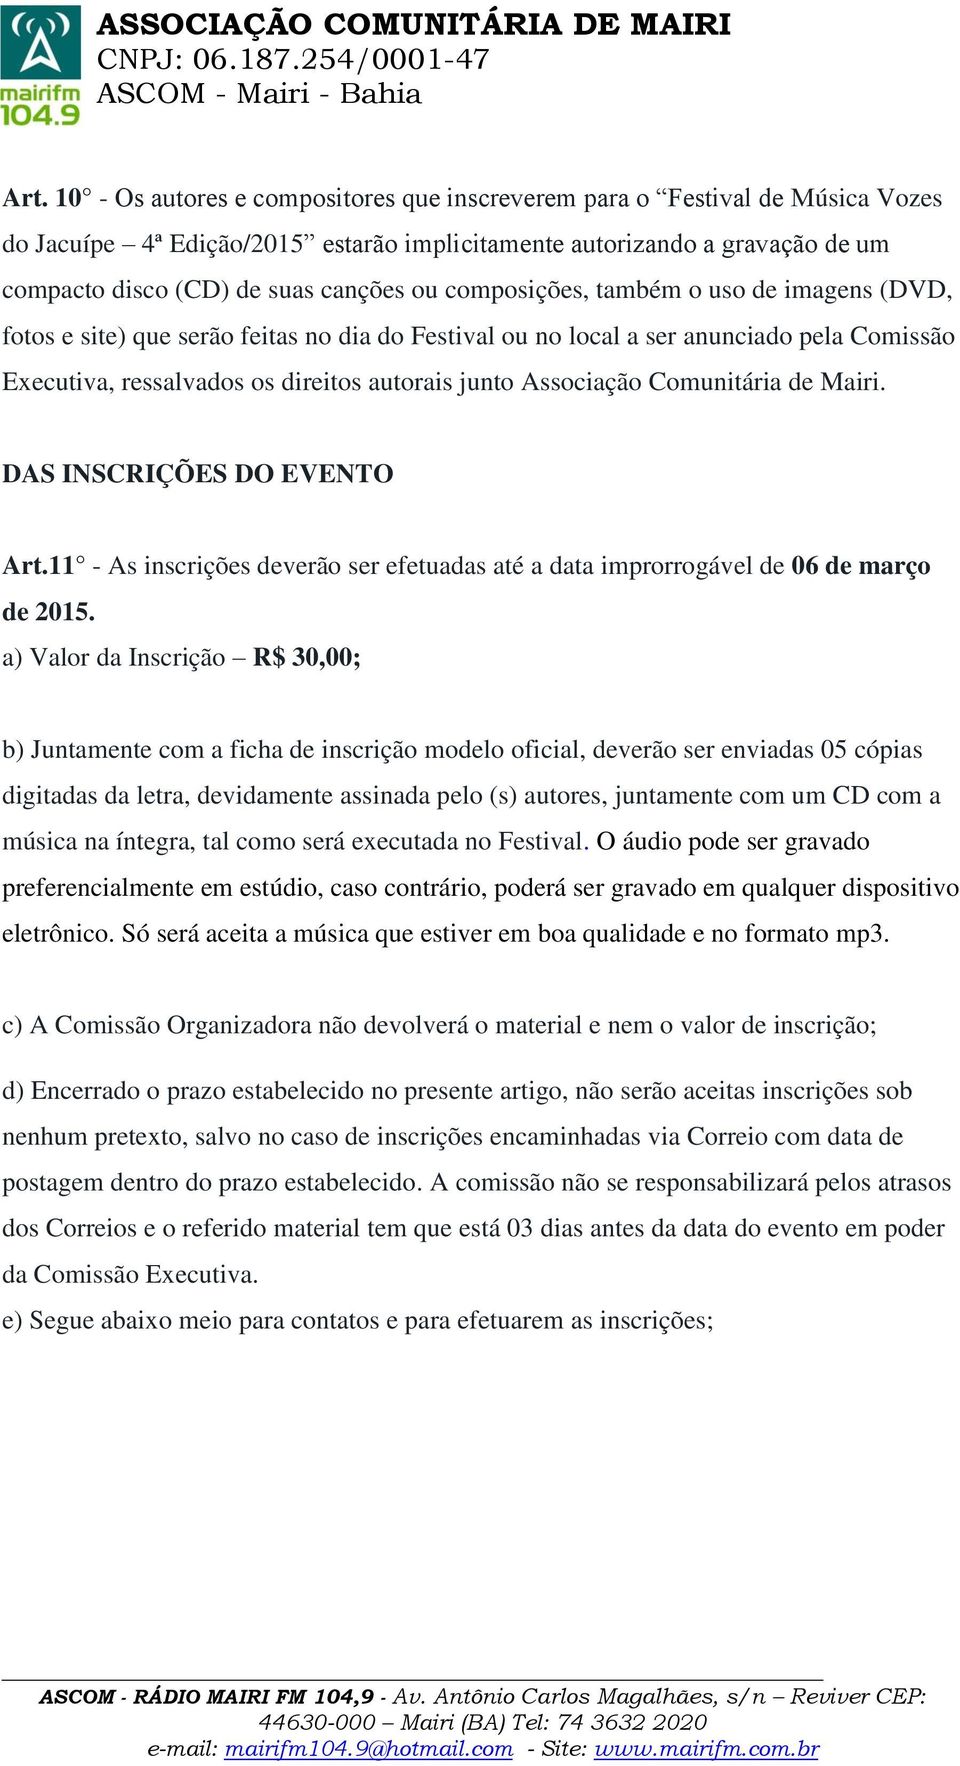 Comunitária de Mairi. DAS INSCRIÇÕES DO EVENTO Art.11 - As inscrições deverão ser efetuadas até a data improrrogável de 06 de março de 2015.